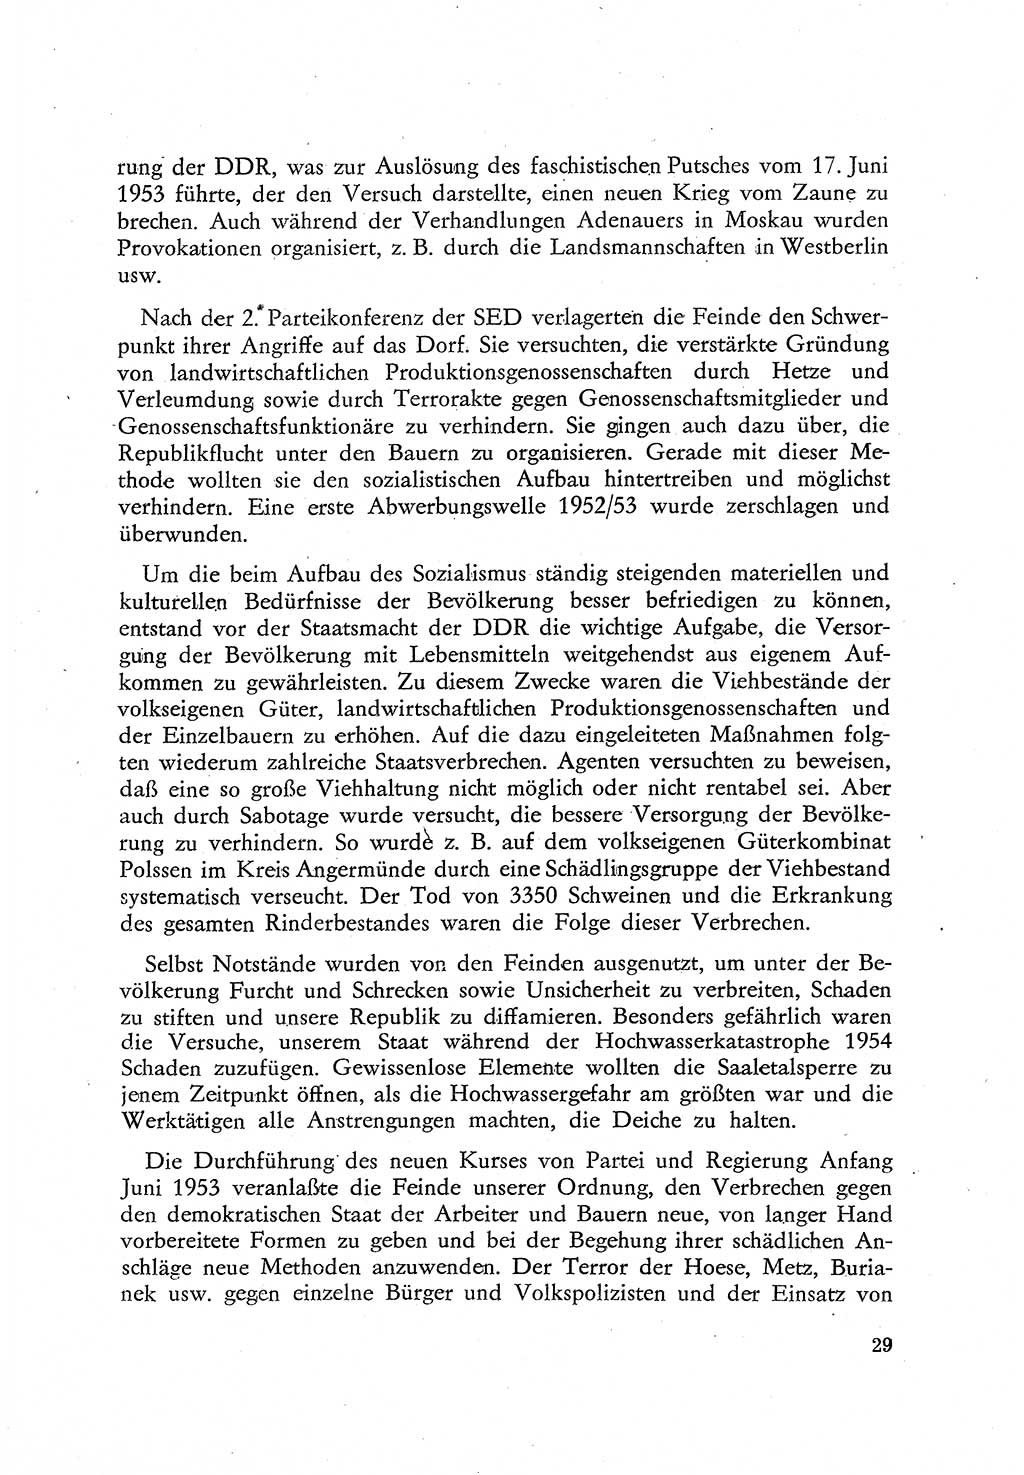 Beiträge zum Strafrecht [Deutsche Demokratische Republik (DDR)], Staatsverbrechen 1959, Seite 29 (Beitr. Strafr. DDR St.-Verbr. 1959, S. 29)